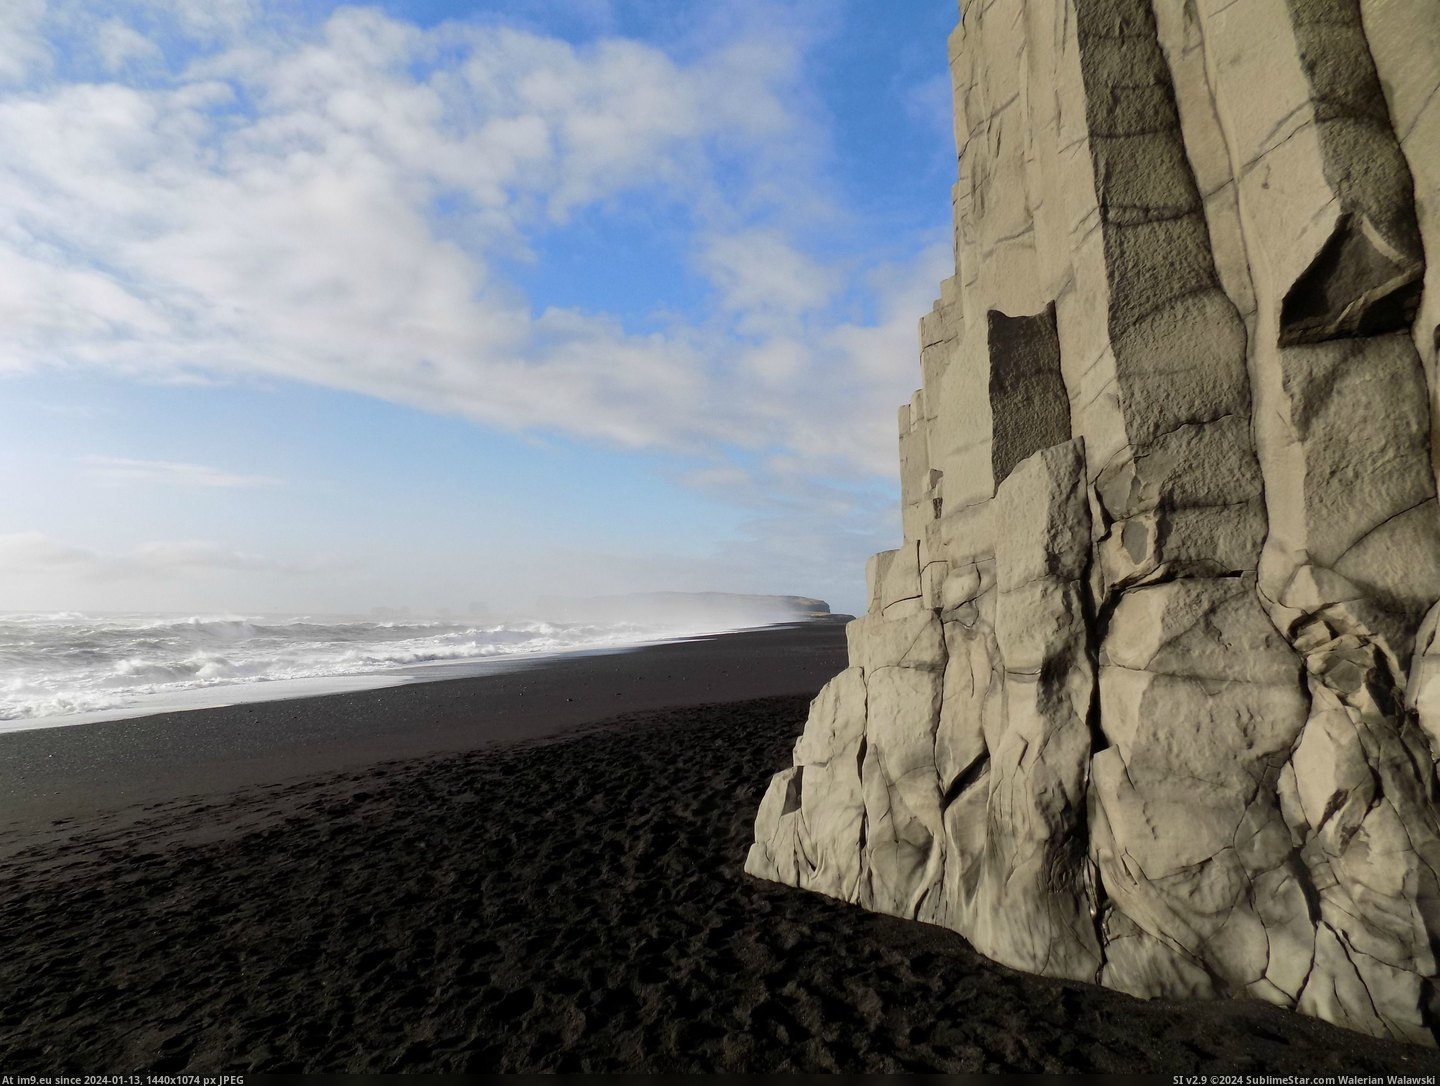 #Black #Beach #Sand #Atlantic #Columns #Ocean #Iceland [Earthporn] Black sand, basalt columns and the Atlantic Ocean at Reynisfjara beach, Iceland [3091x2318] Pic. (Изображение из альбом My r/EARTHPORN favs))